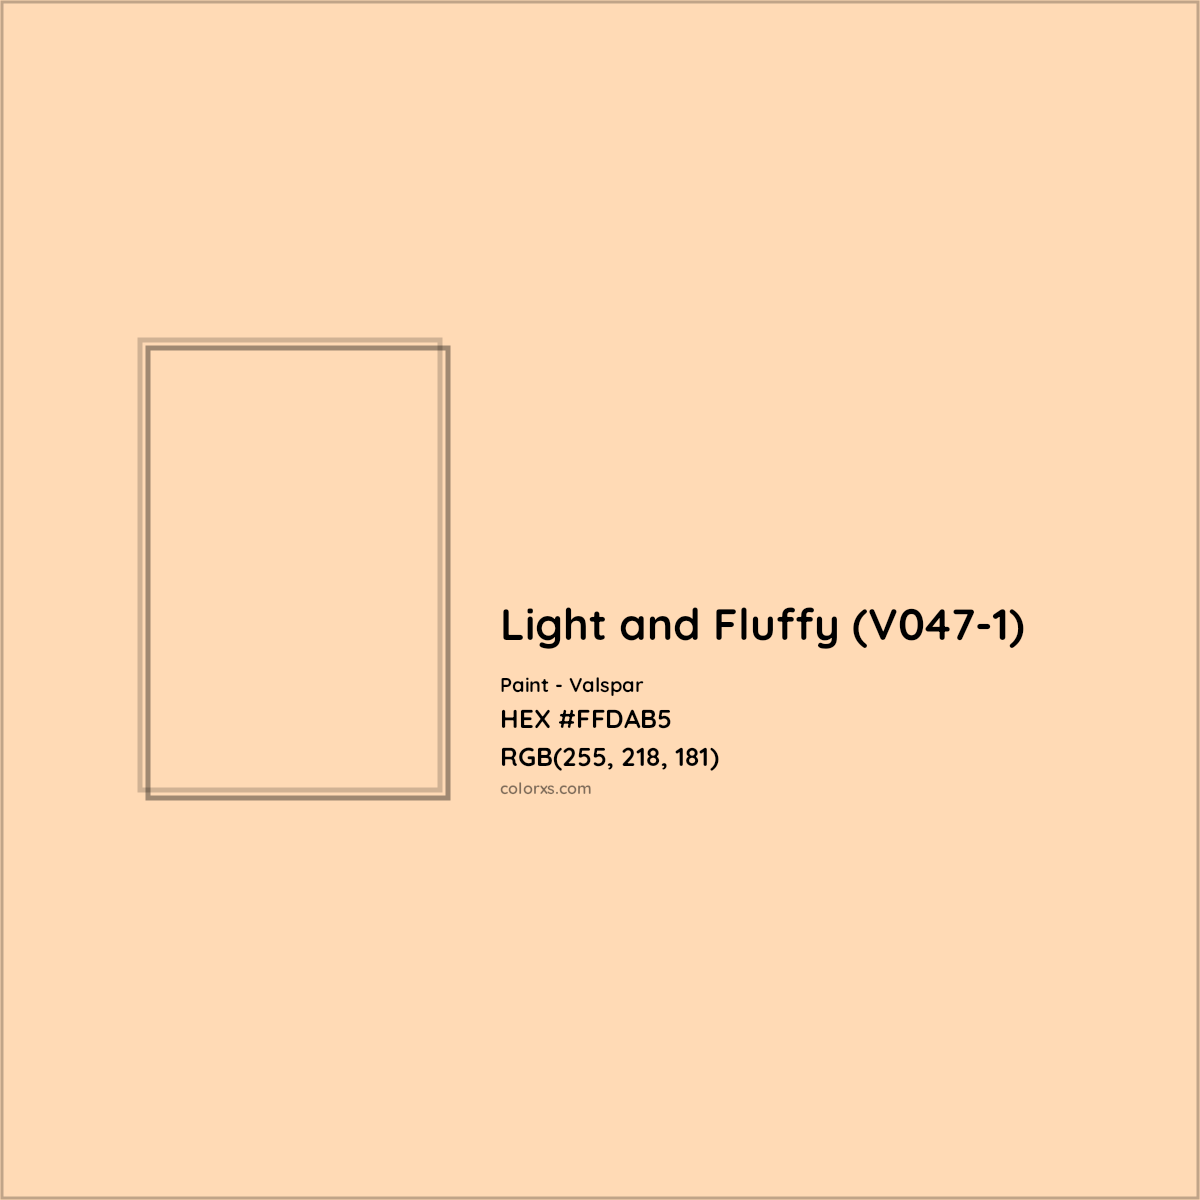 HEX #FFDAB5 Light and Fluffy (V047-1) Paint Valspar - Color Code